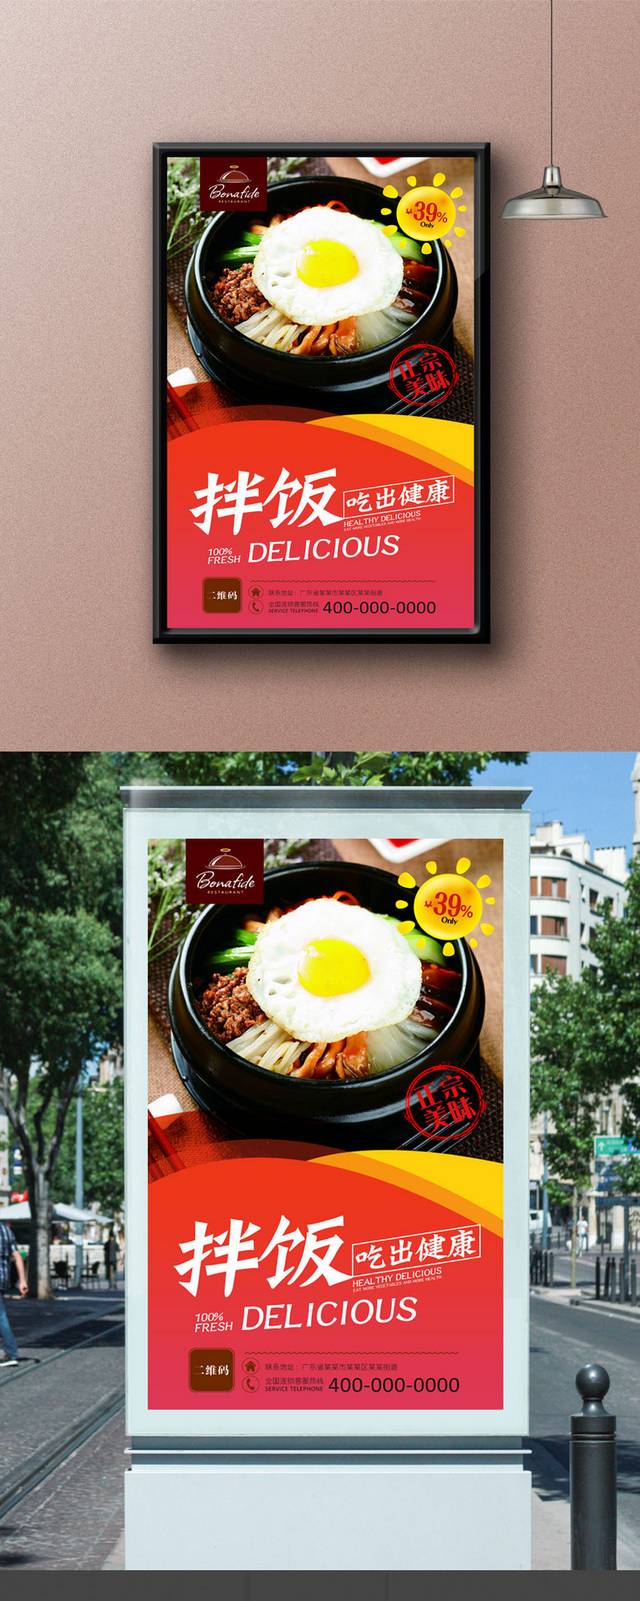 高档石锅拌饭宣传海报设计